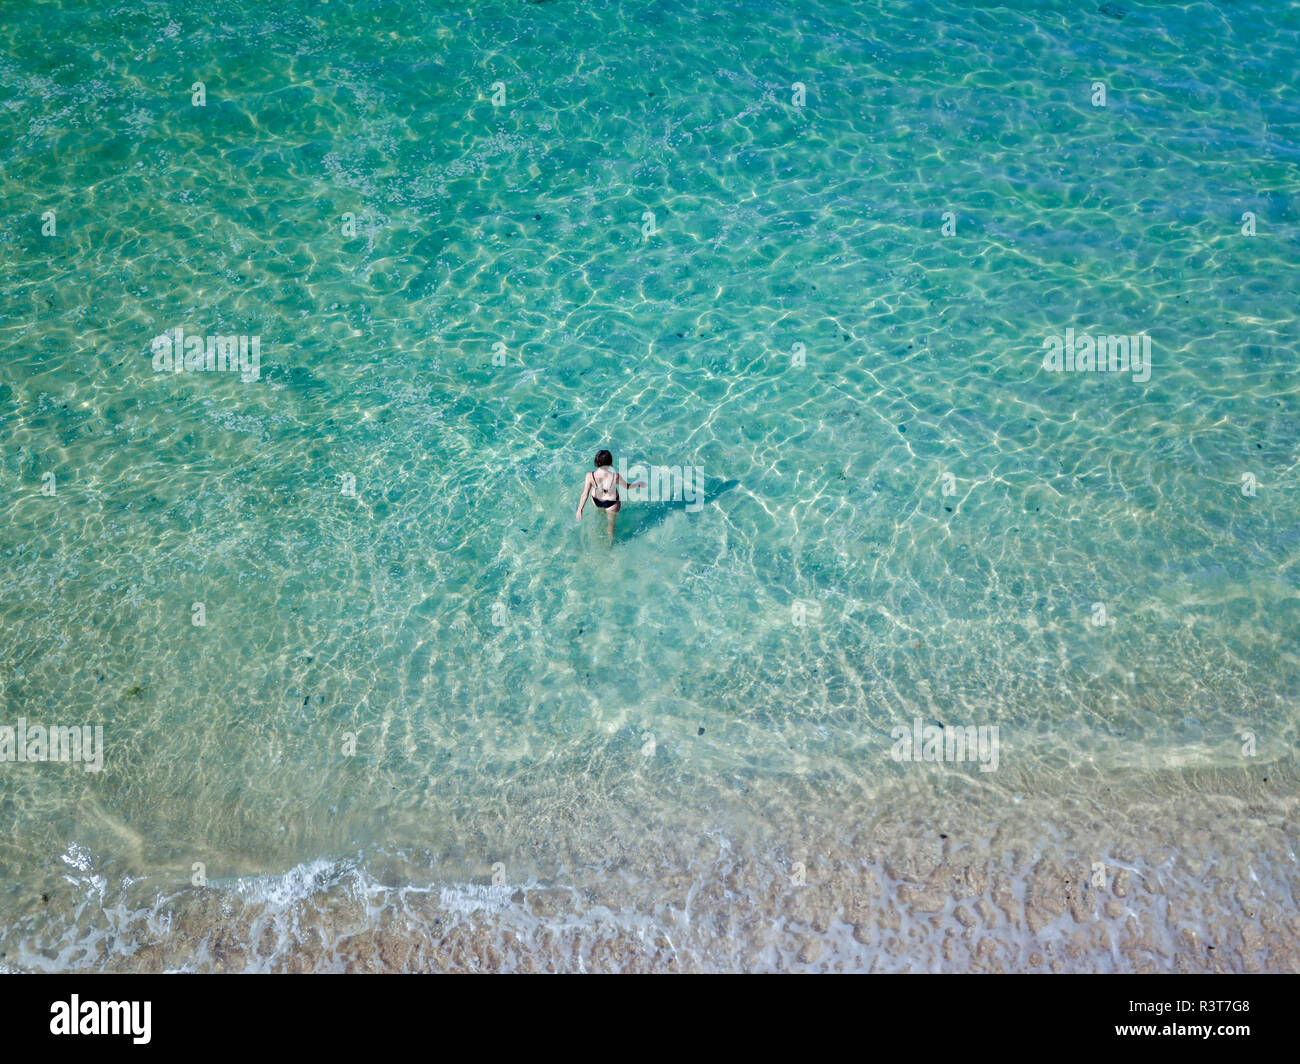 Indonesia, Bali, Melasti, vista aerea del Karma Kandara beach, donna di andare in acqua Foto Stock